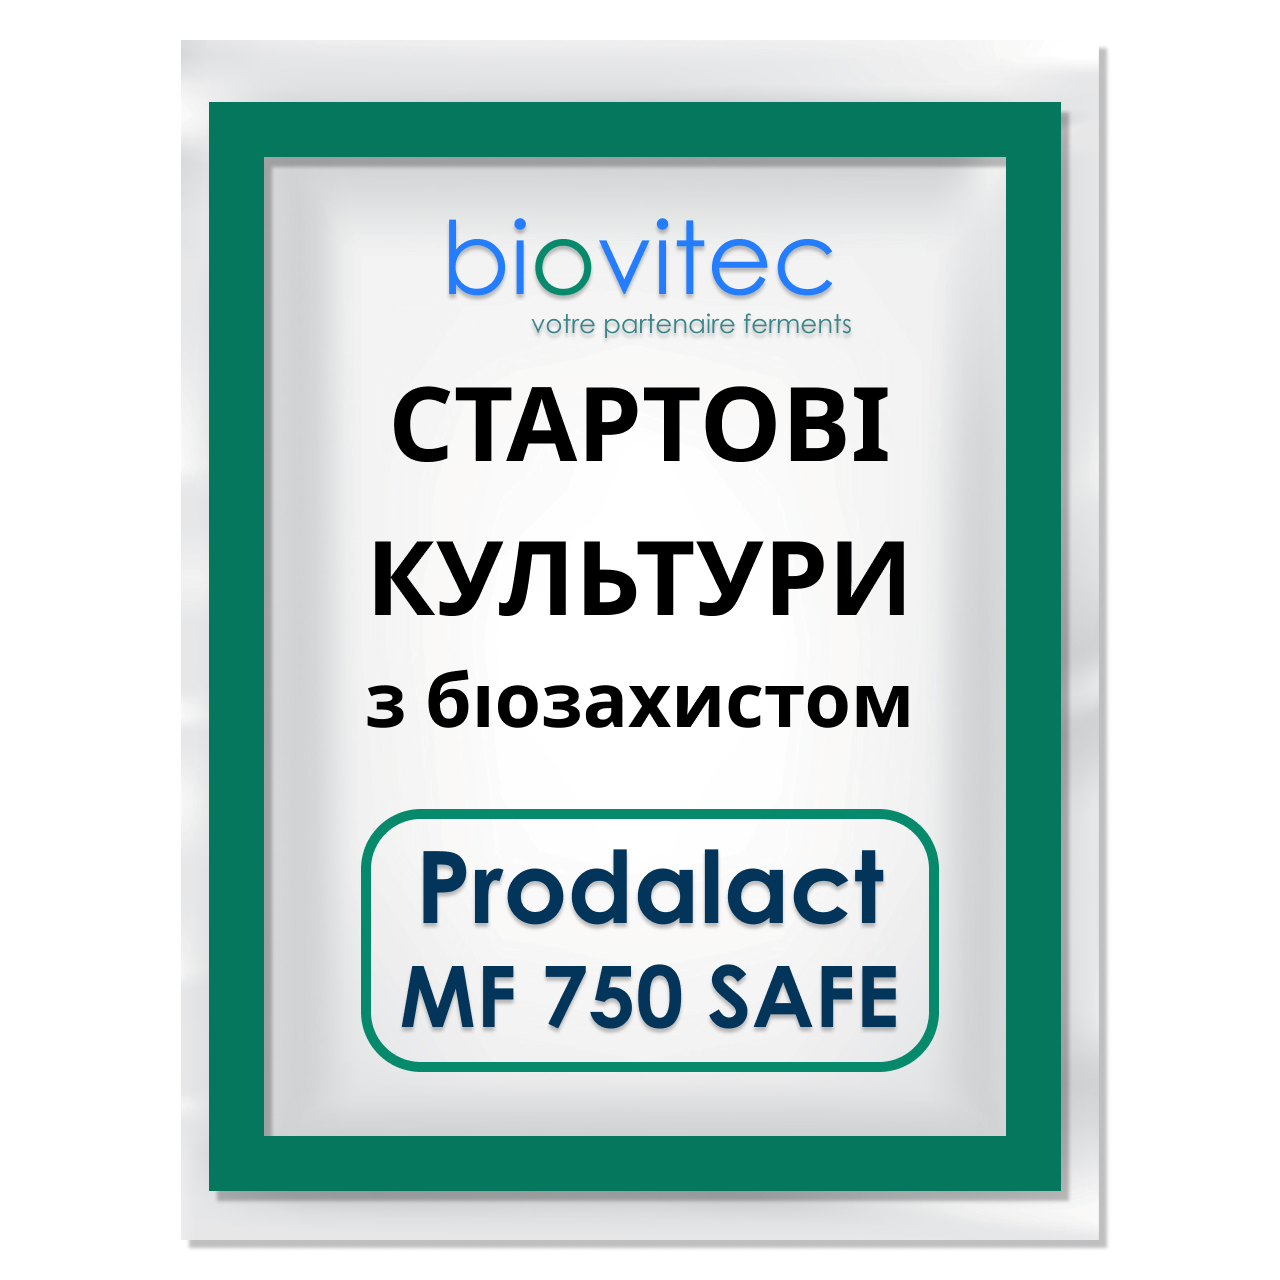 СТАРТОВІ КУЛЬТУРИ Prodalaсt MF 750 SAFE на 100 кг BIOVITEC - з біозахистом для ковбас, делікатесів,